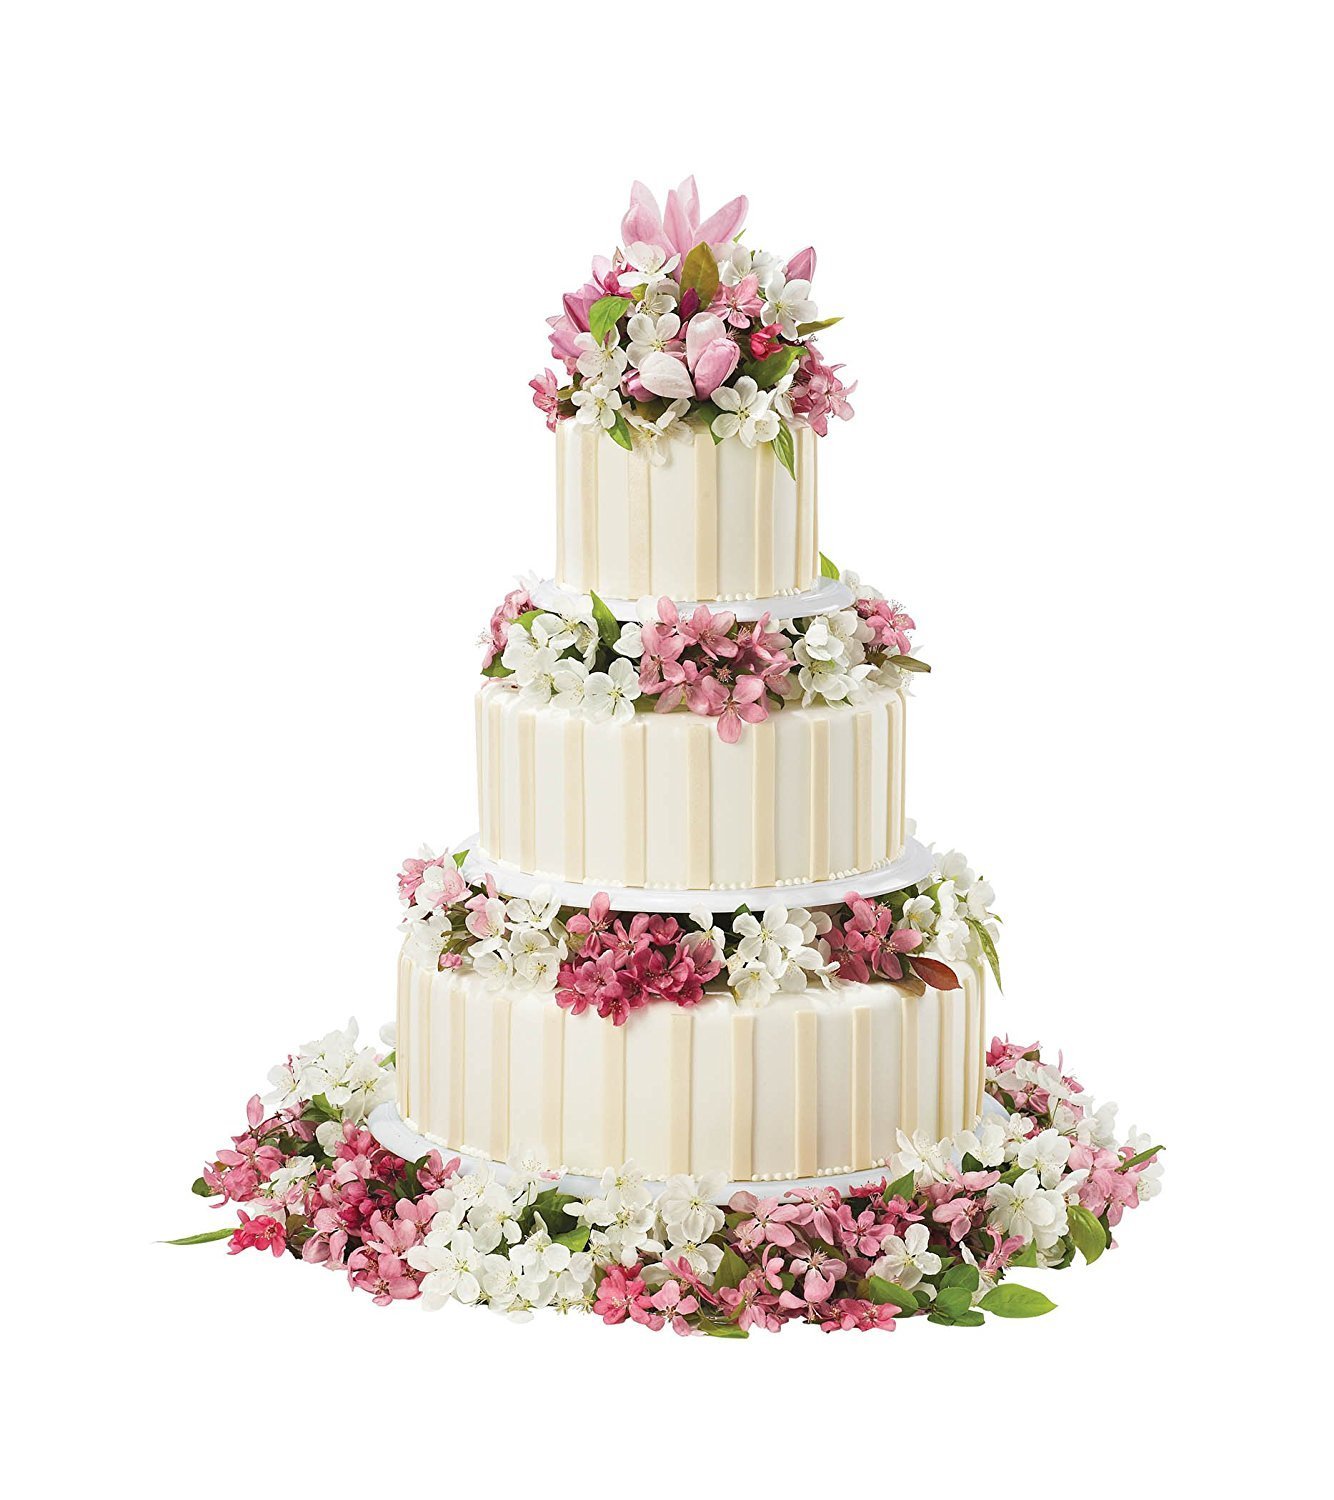 Трехярусный или трехъярусный. Многоярусный торт. Трехэтажный свадебный торт. Свадебный торт трехъярусный. Свадебный торт многоярусный.